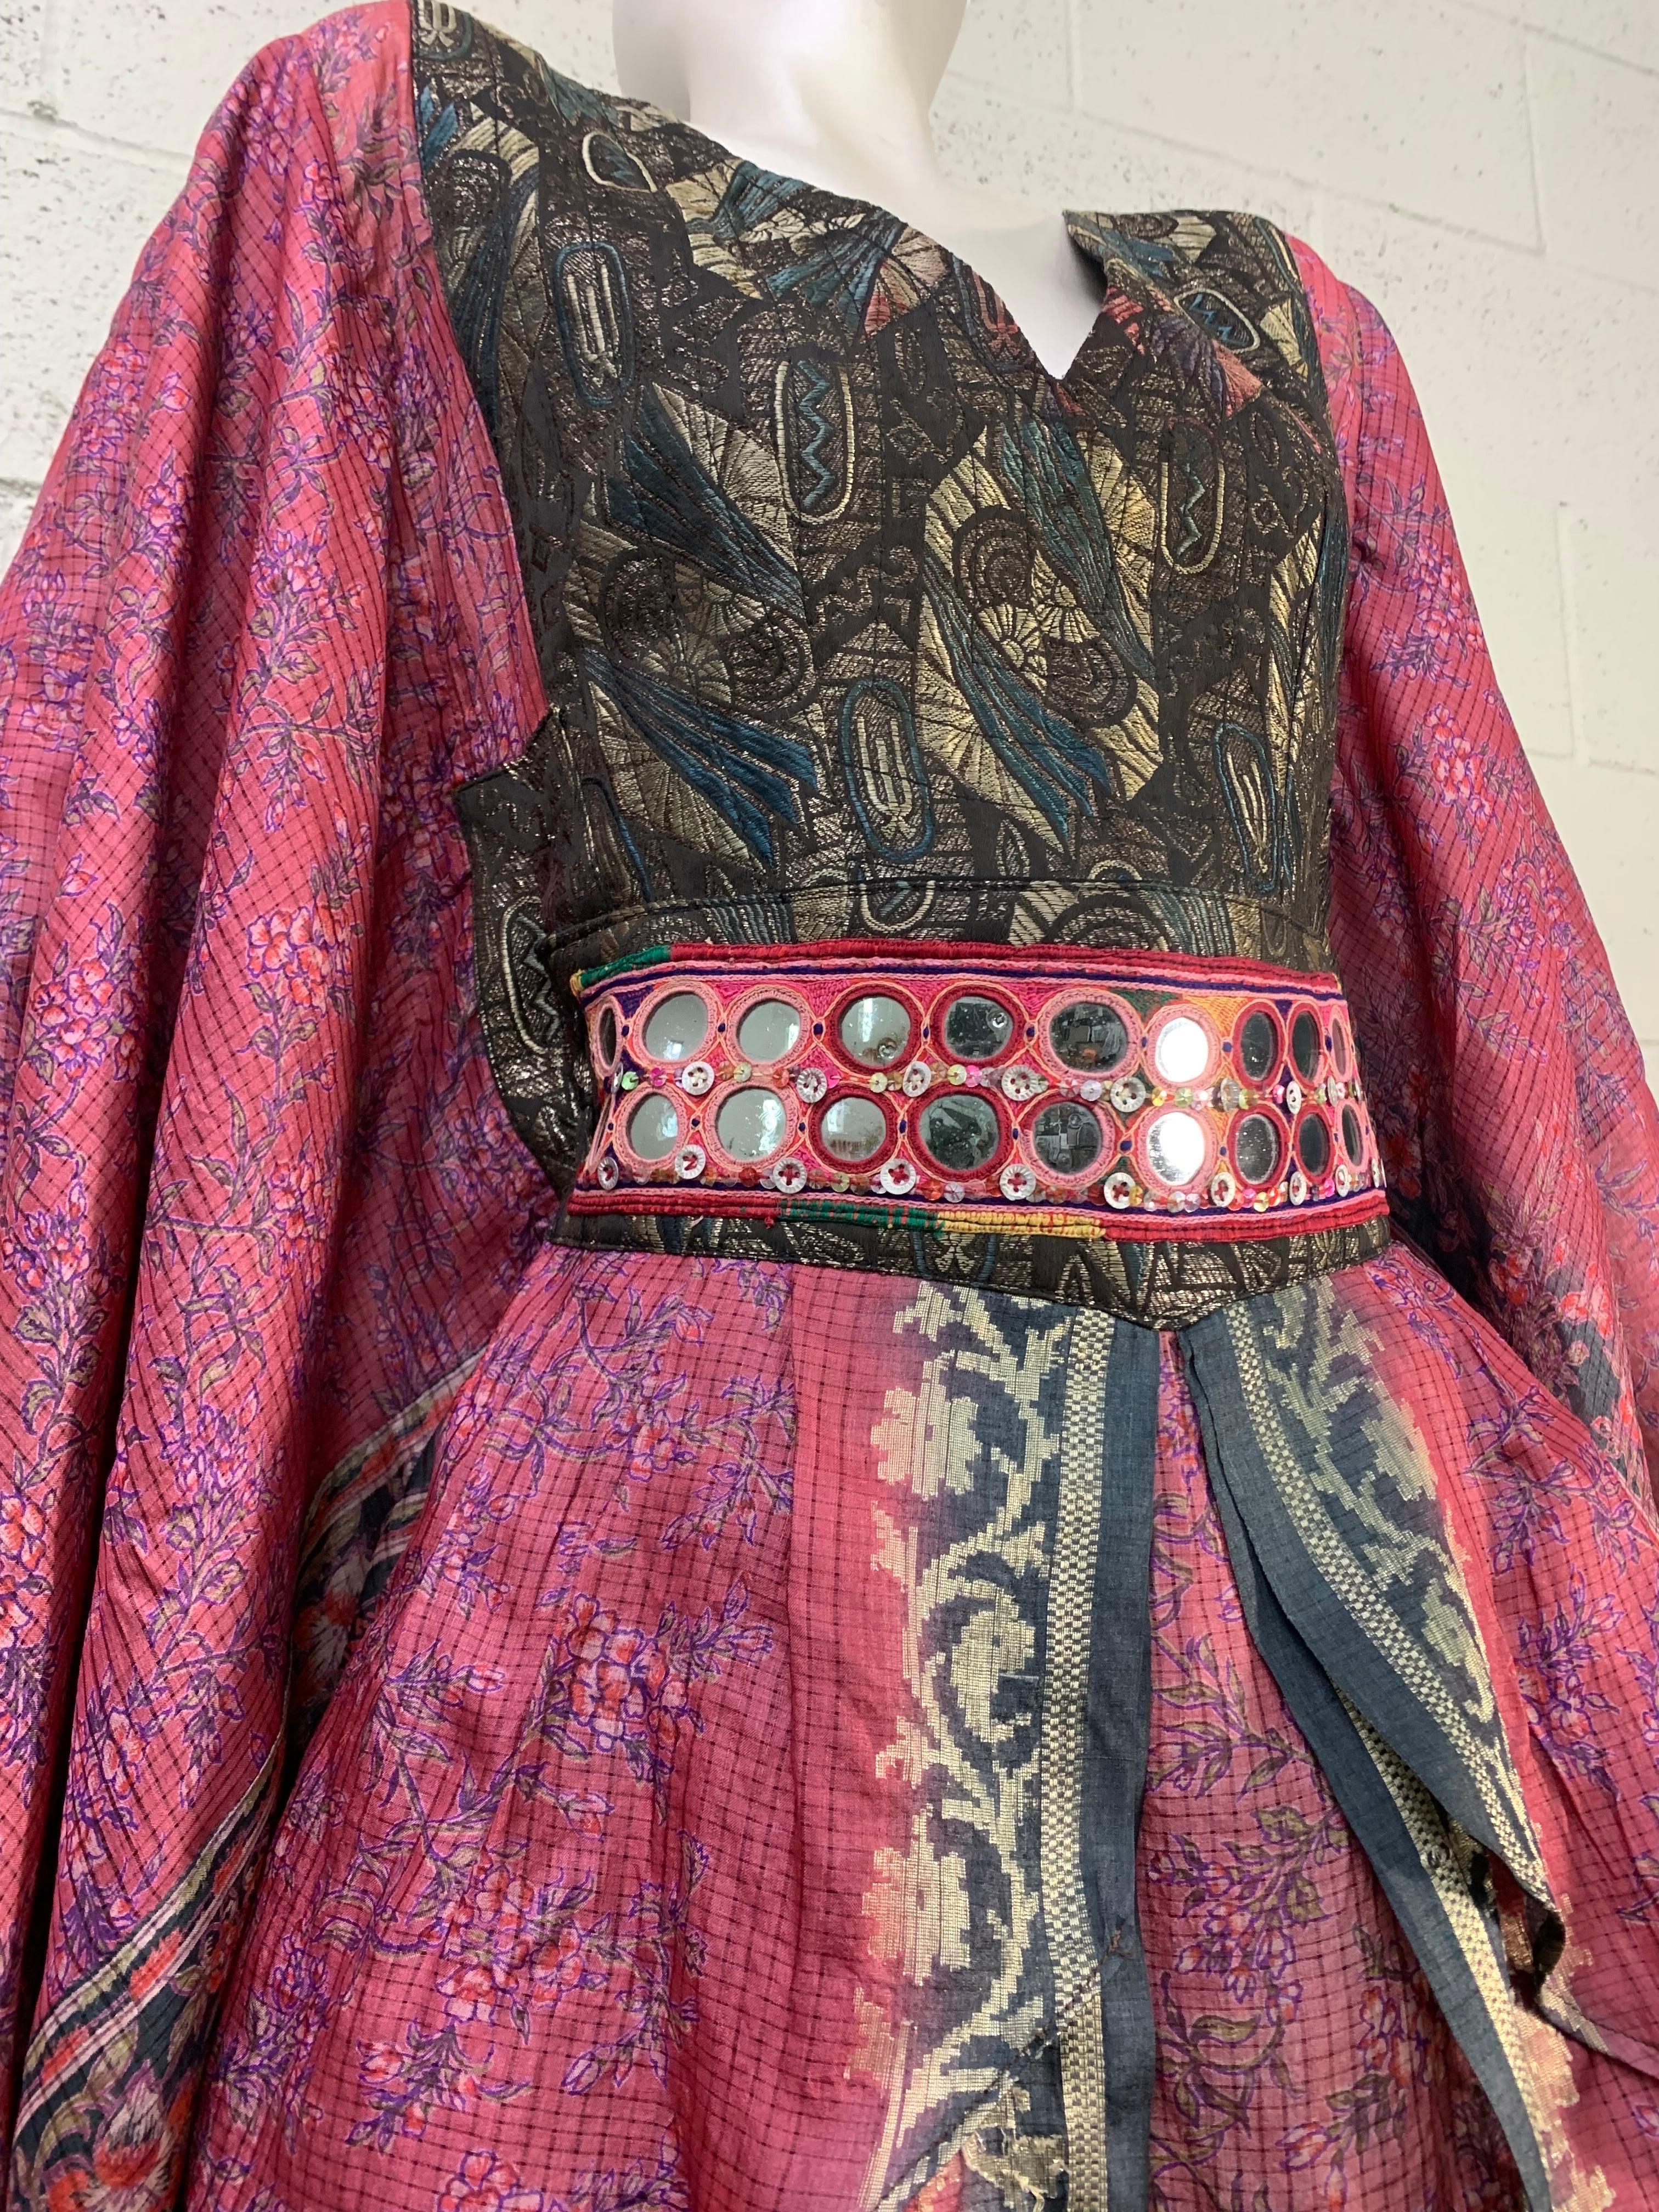 bakhu dress images